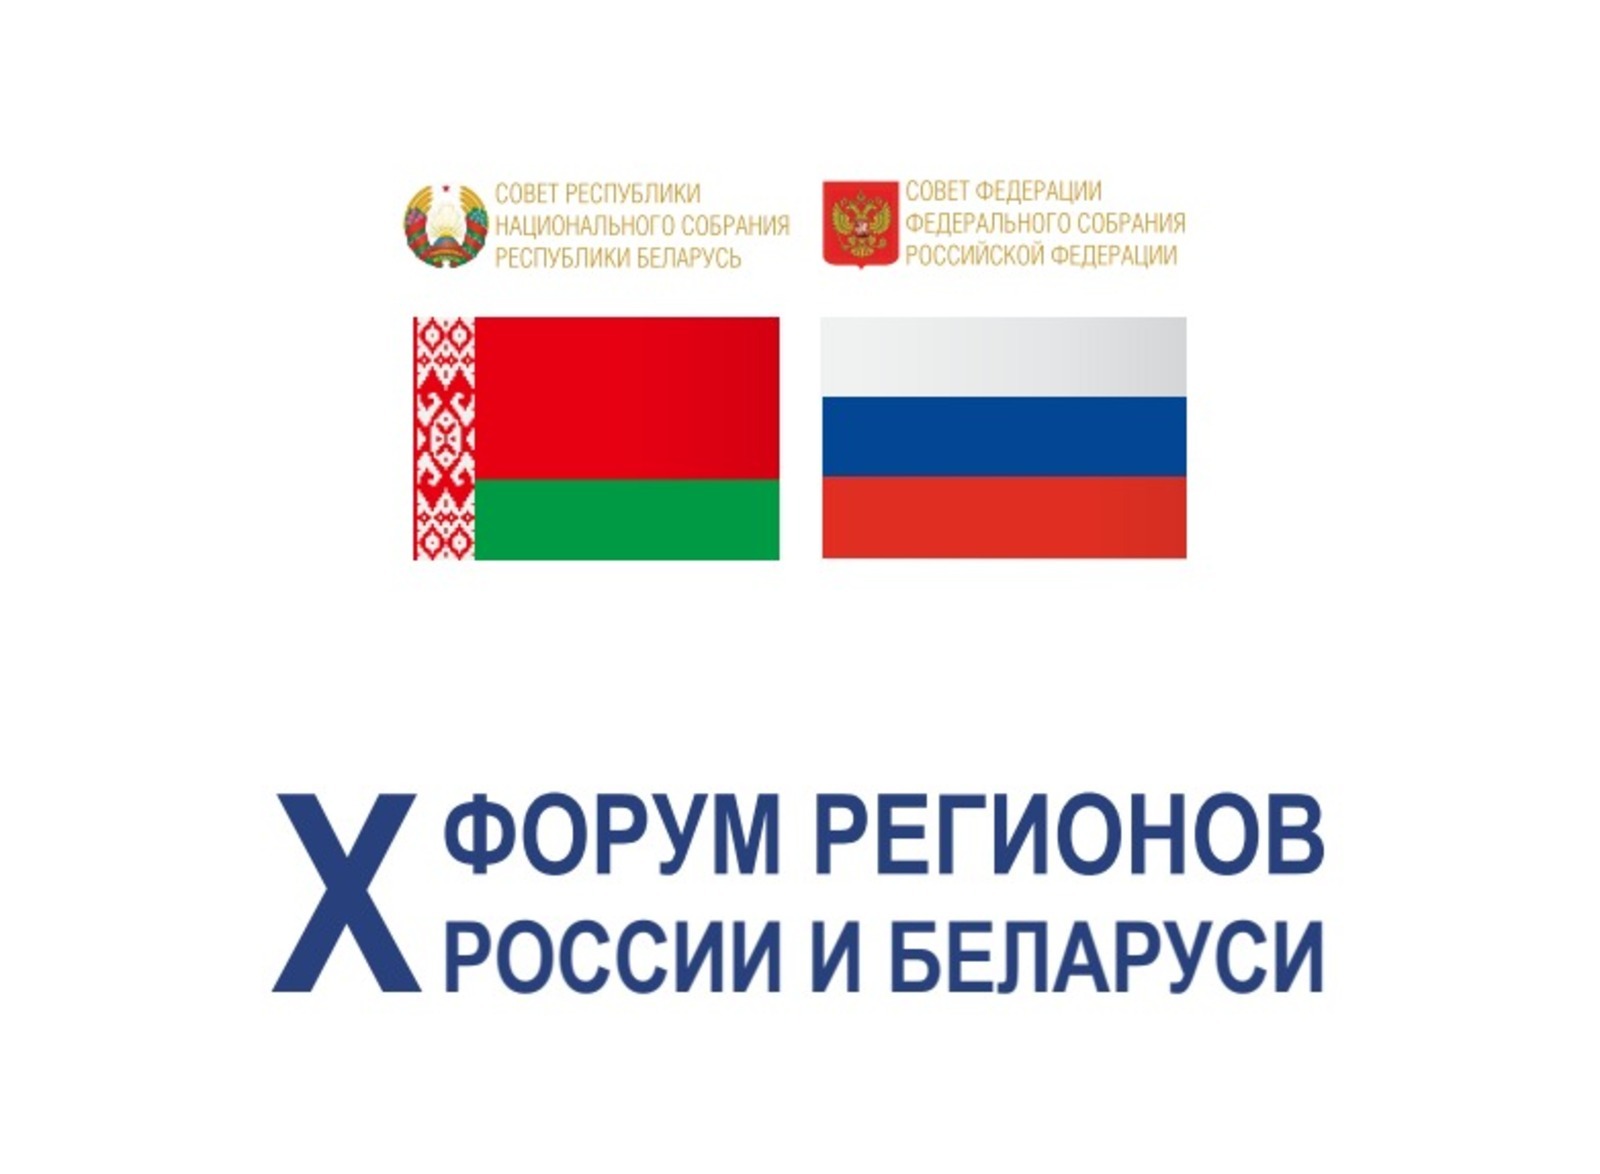 В Башкирии дружественные государства наметят новые пути сотрудничества в рамках Х форума регионов России и Беларуси